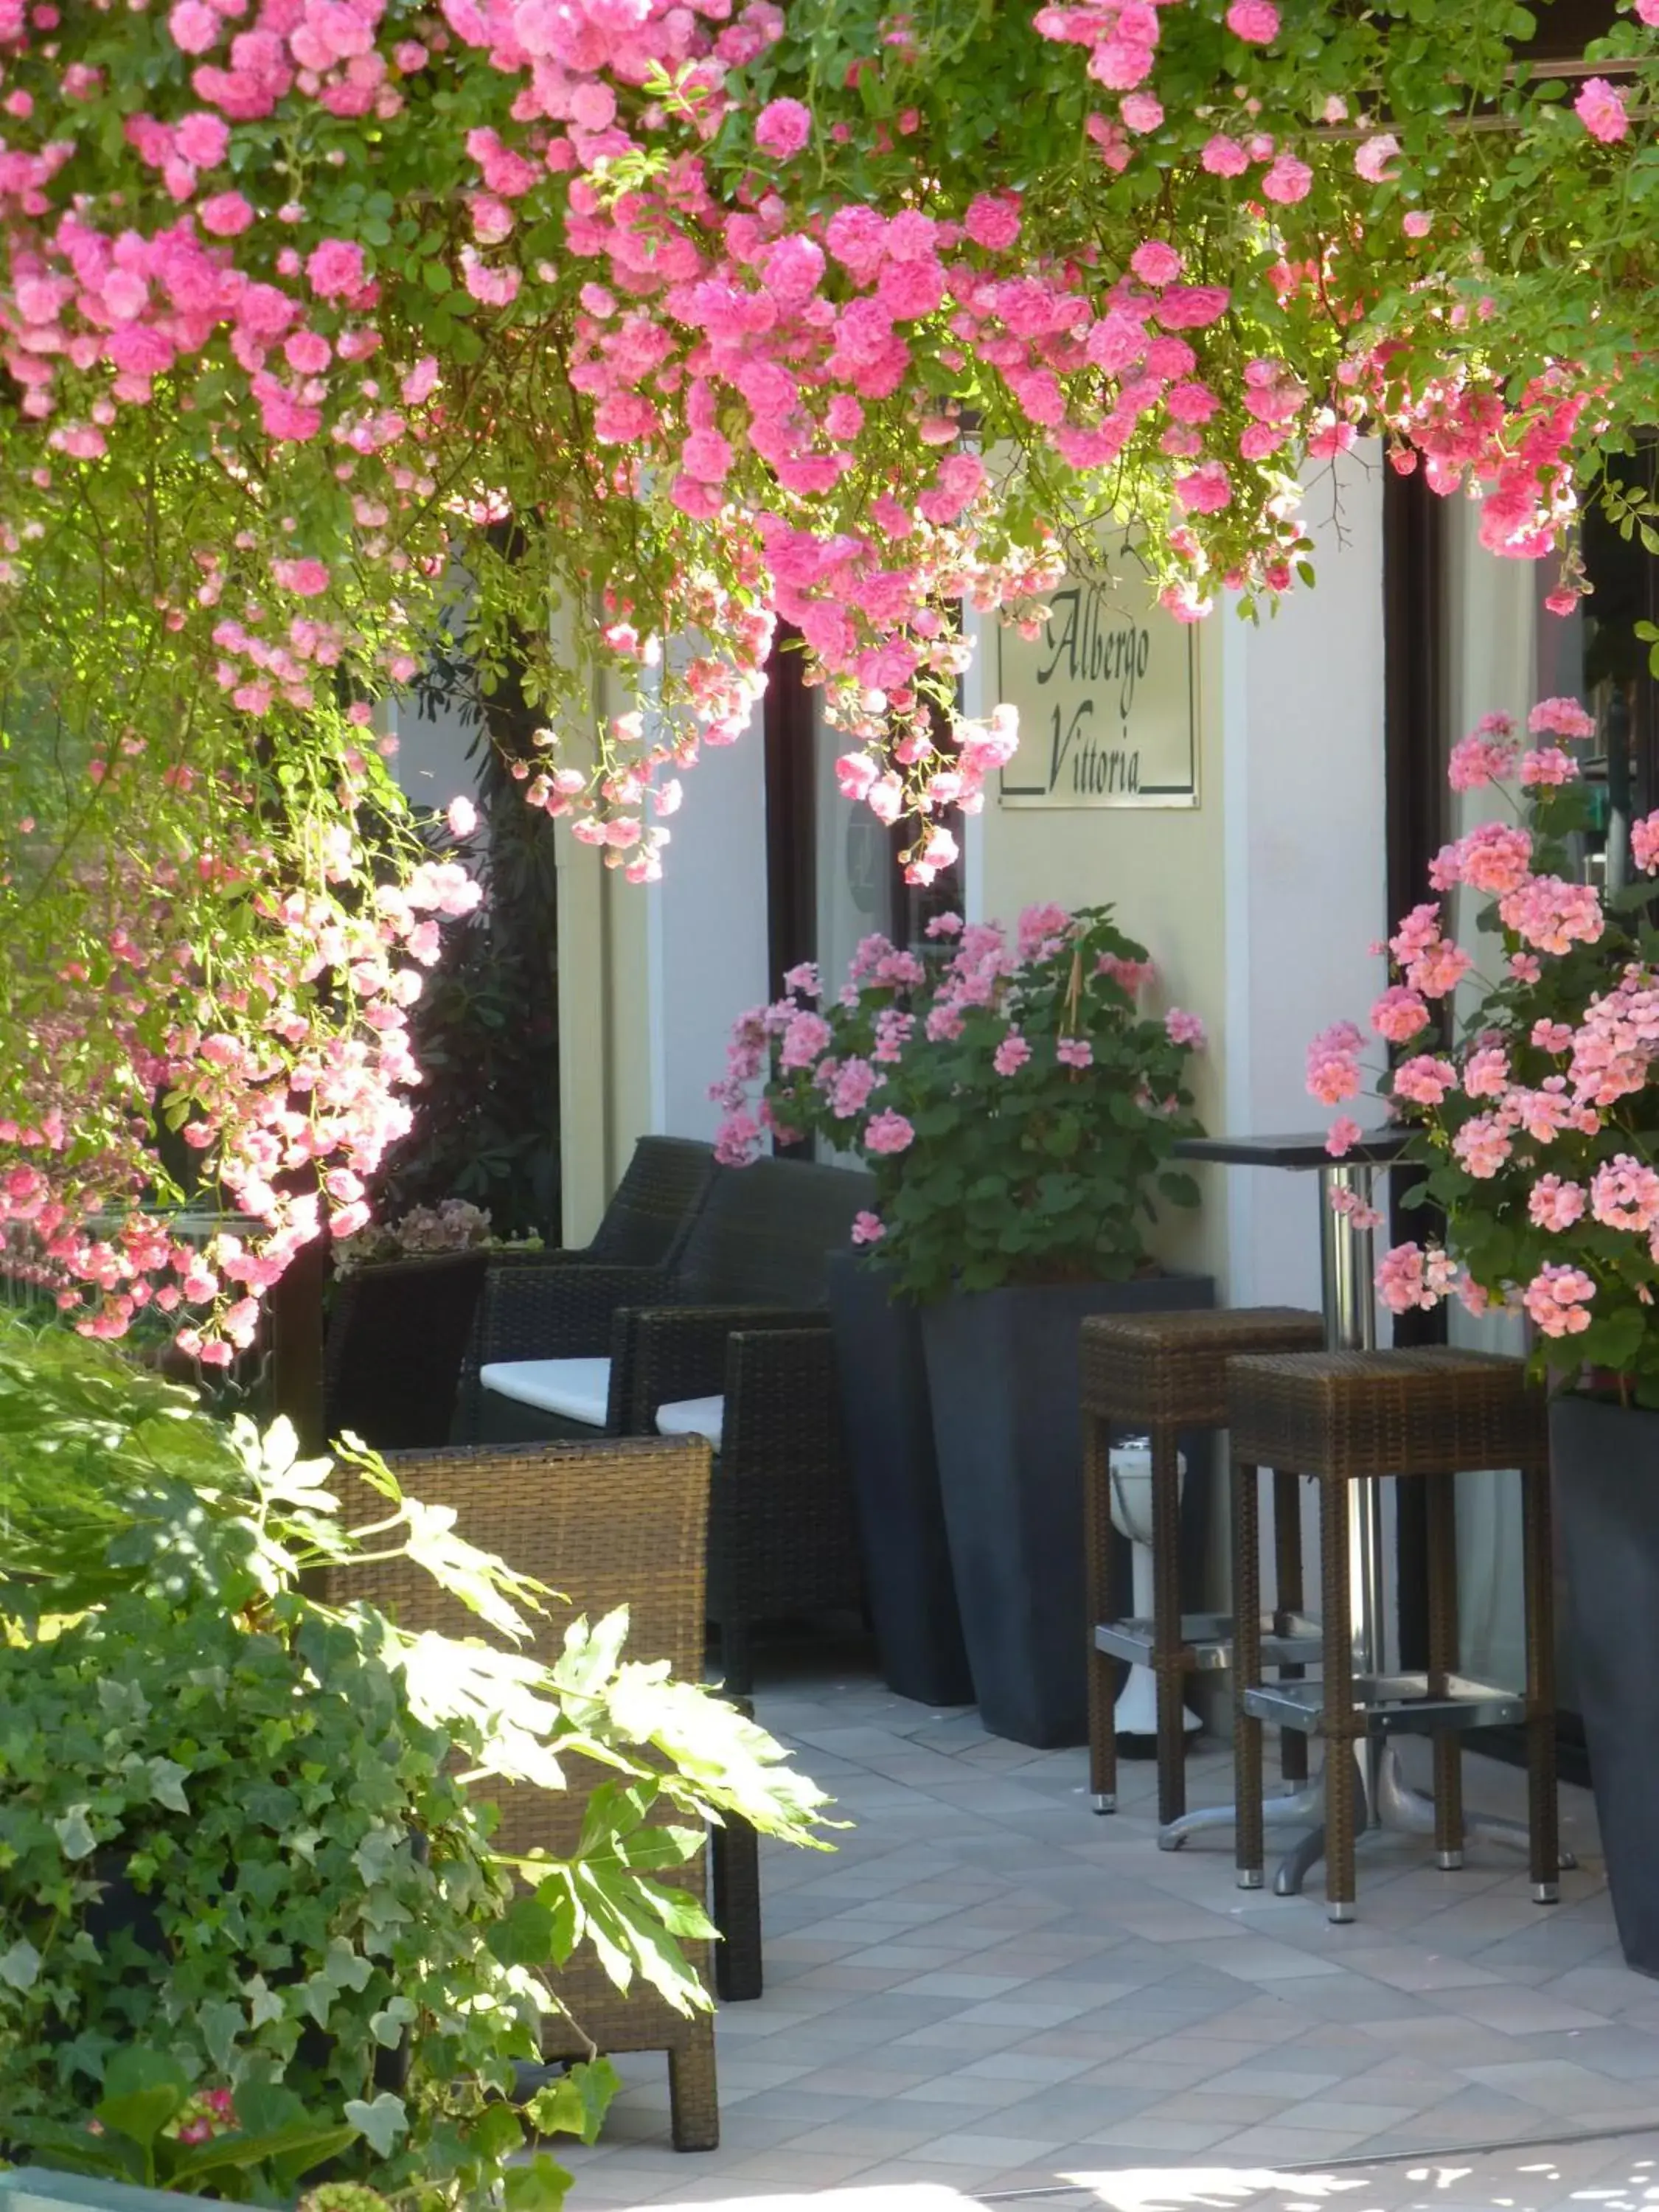 Spring, Restaurant/Places to Eat in Albergo Vittoria